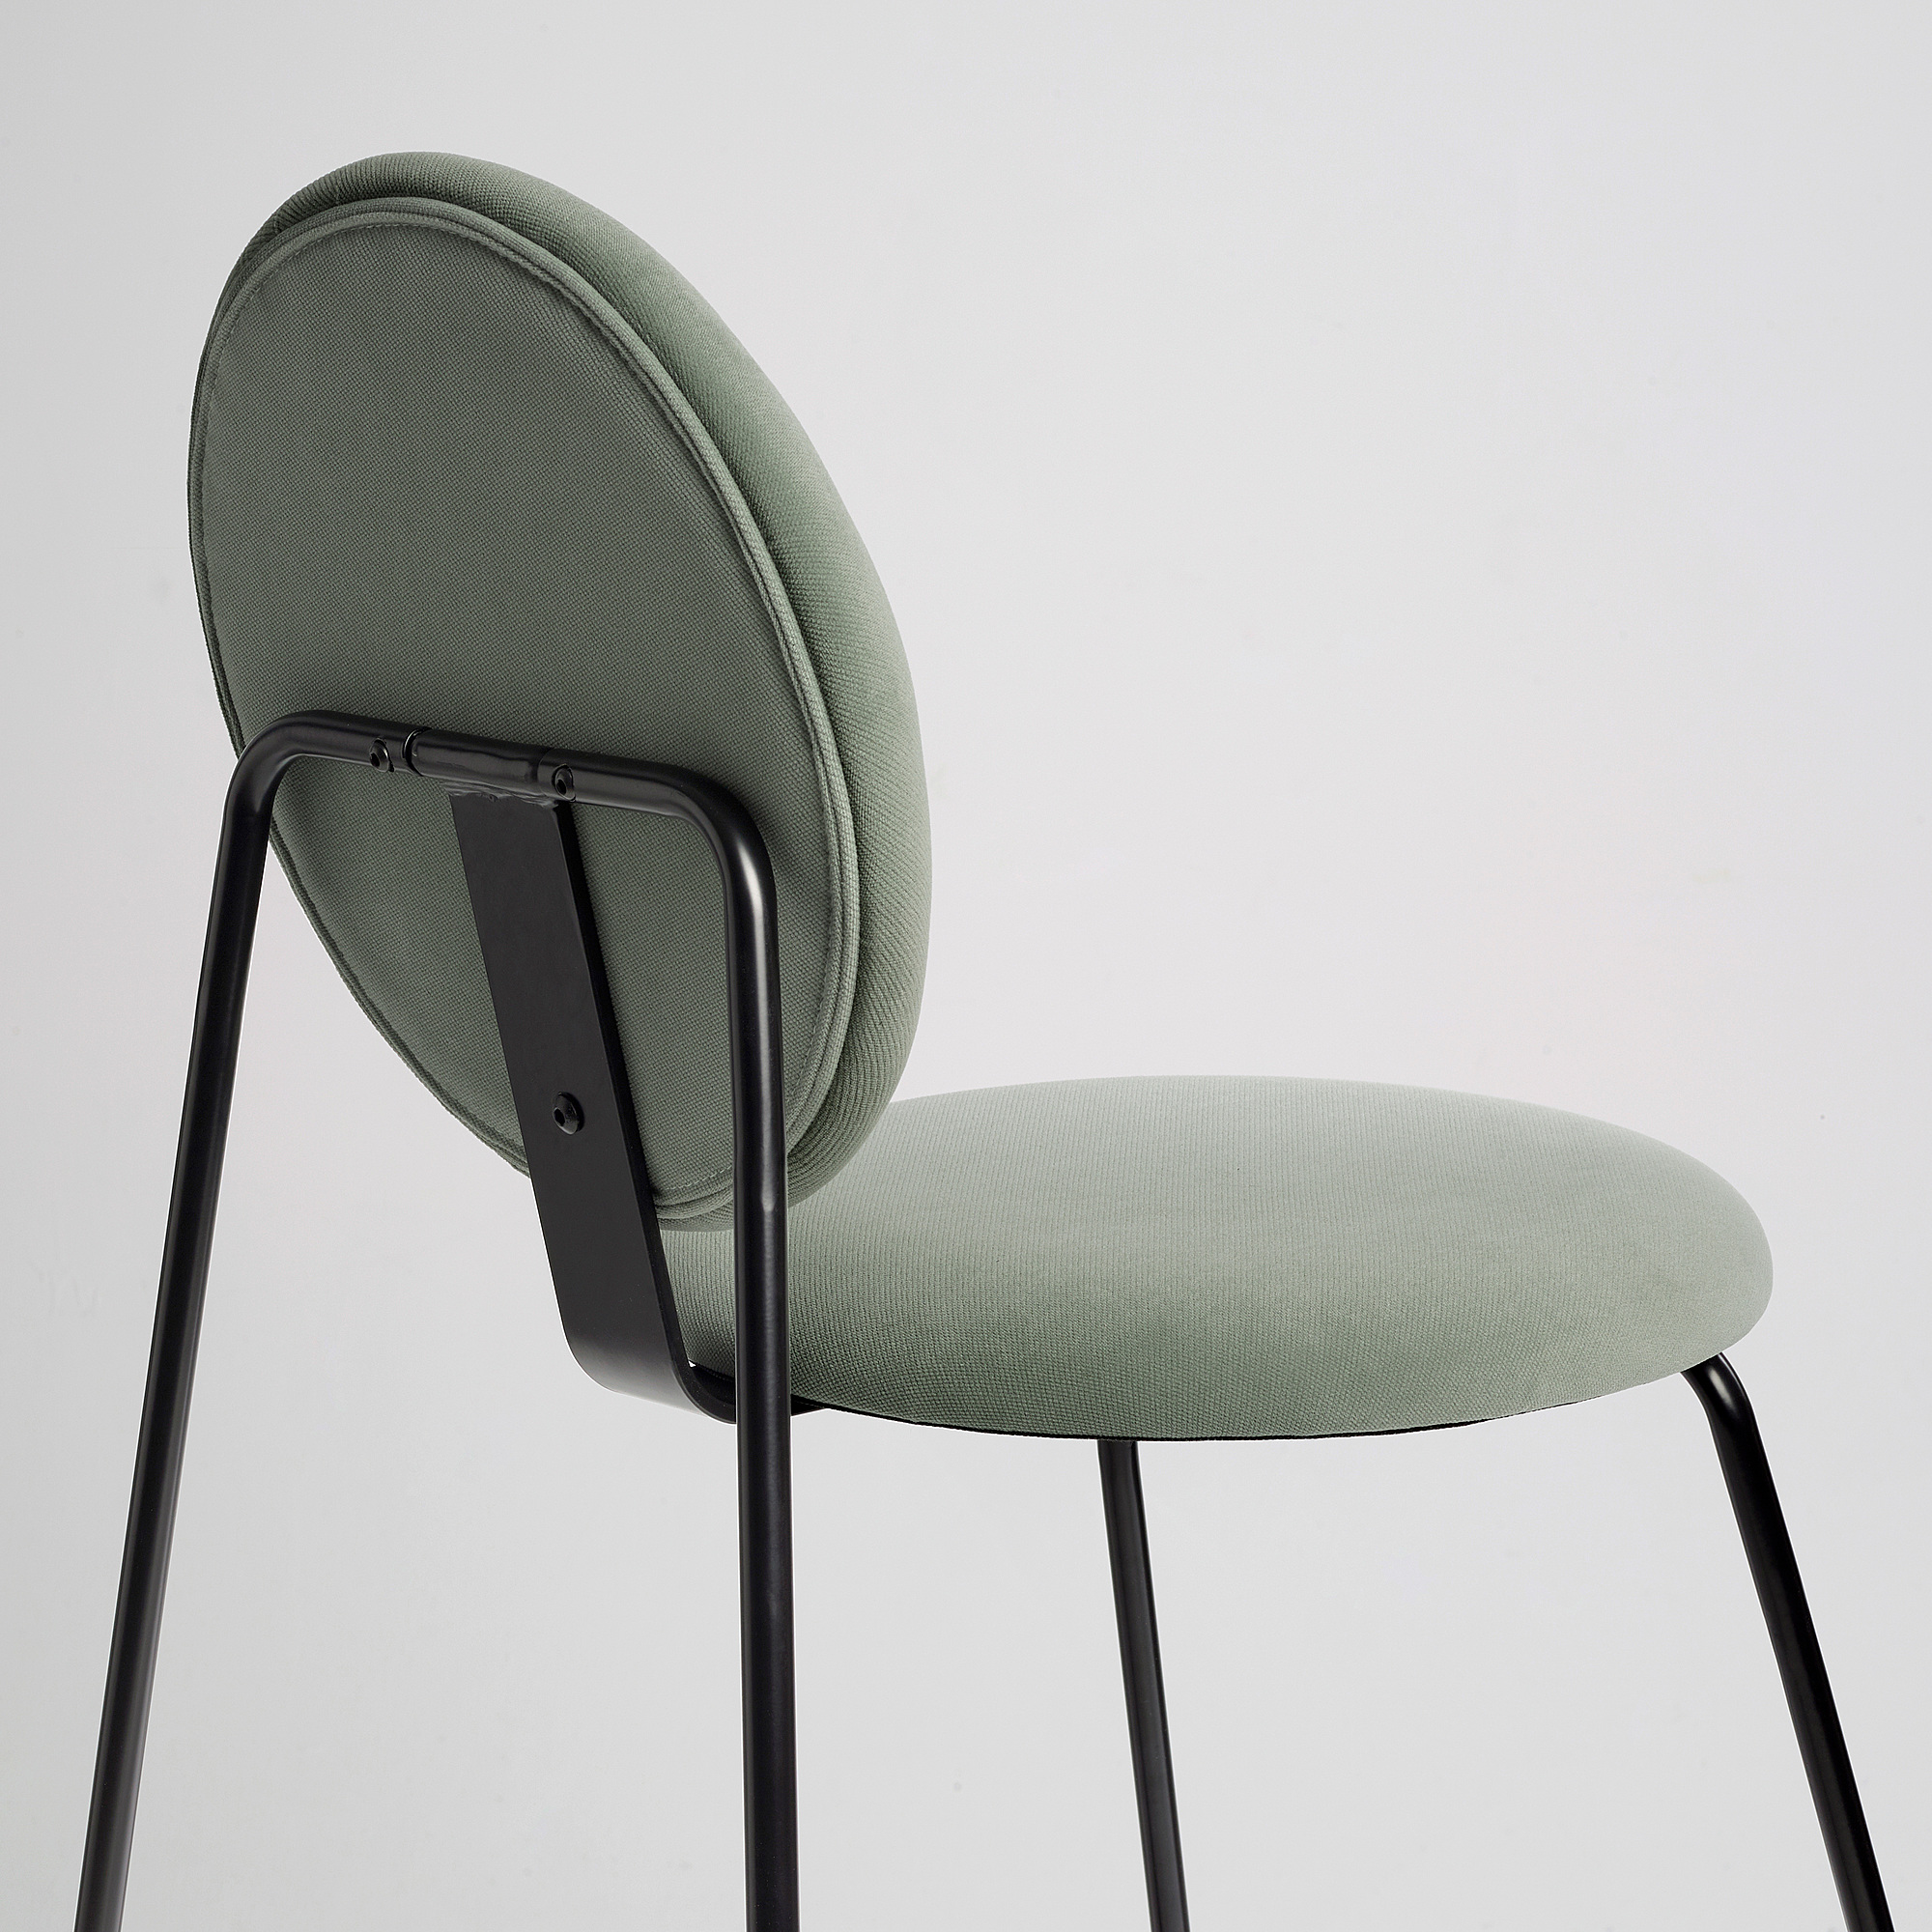 MÅNHULT chair